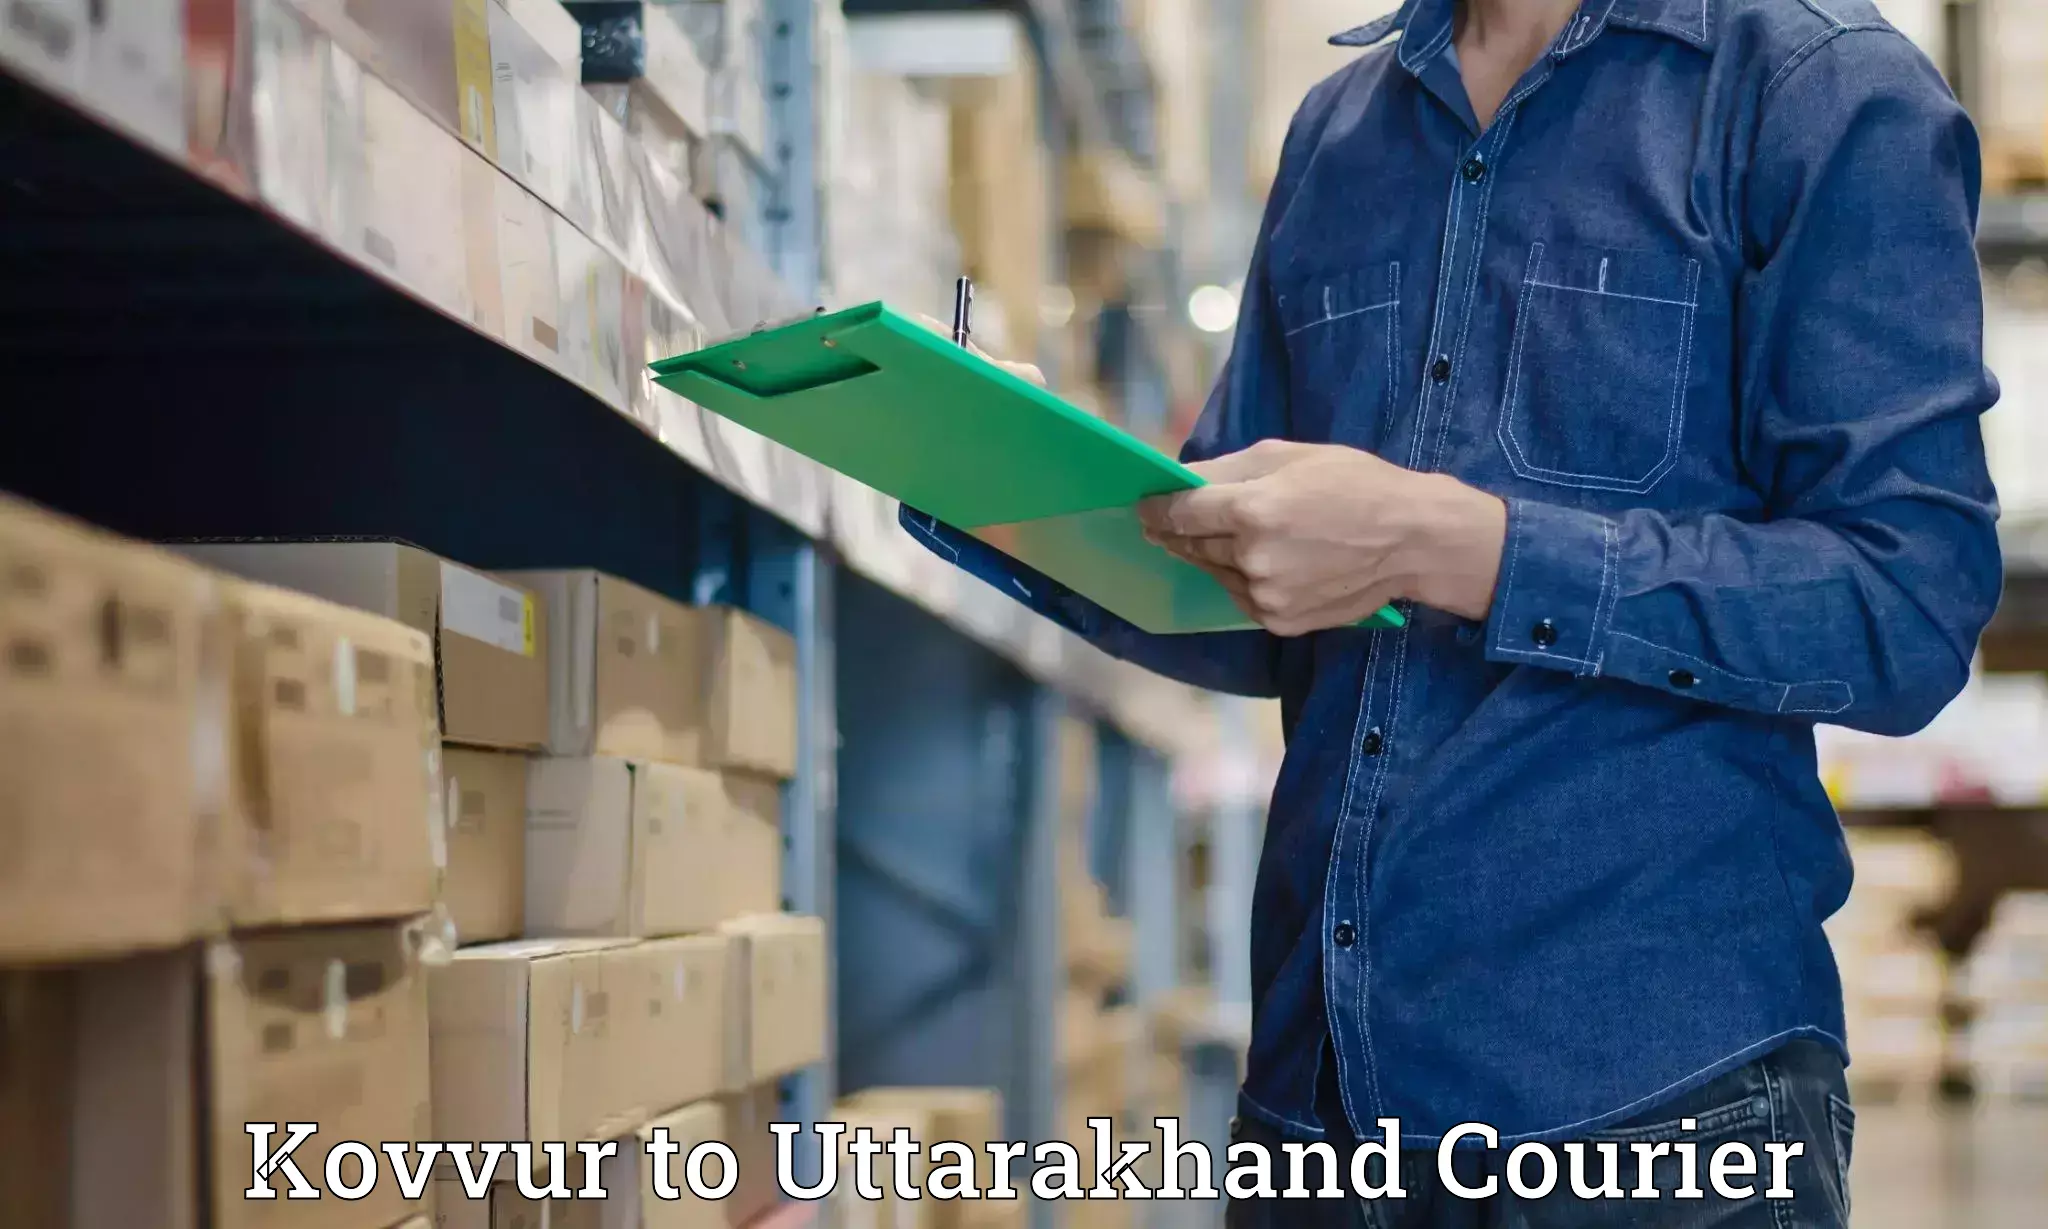 Logistics service provider Kovvur to Uttarkashi